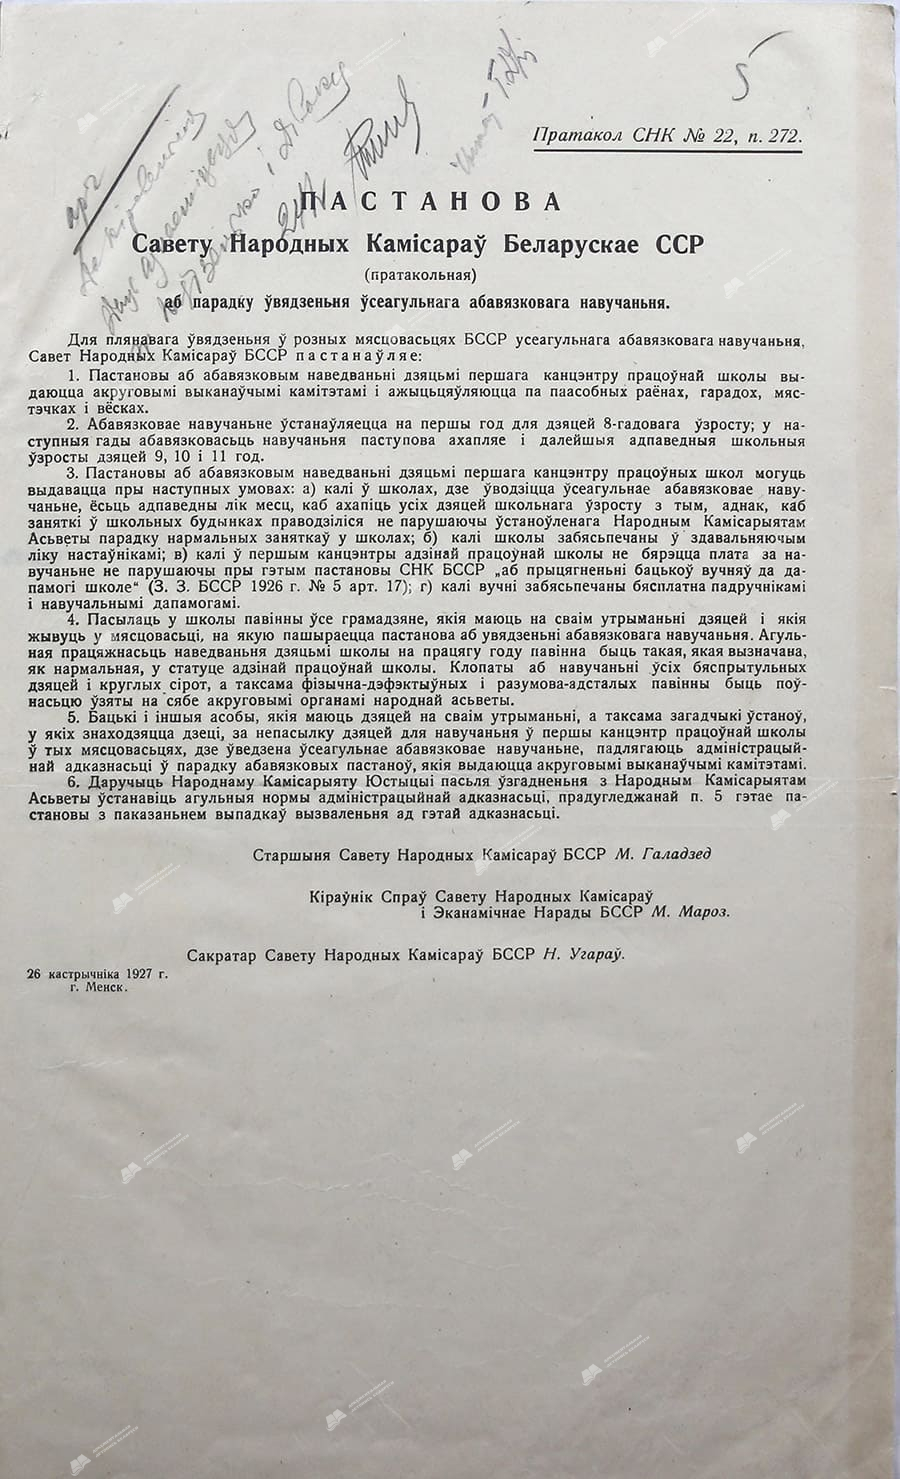 Постановление Совета Народных Комиссаров Белорусской ССР (протокол) о порядке введения обязательного образования-с. 0